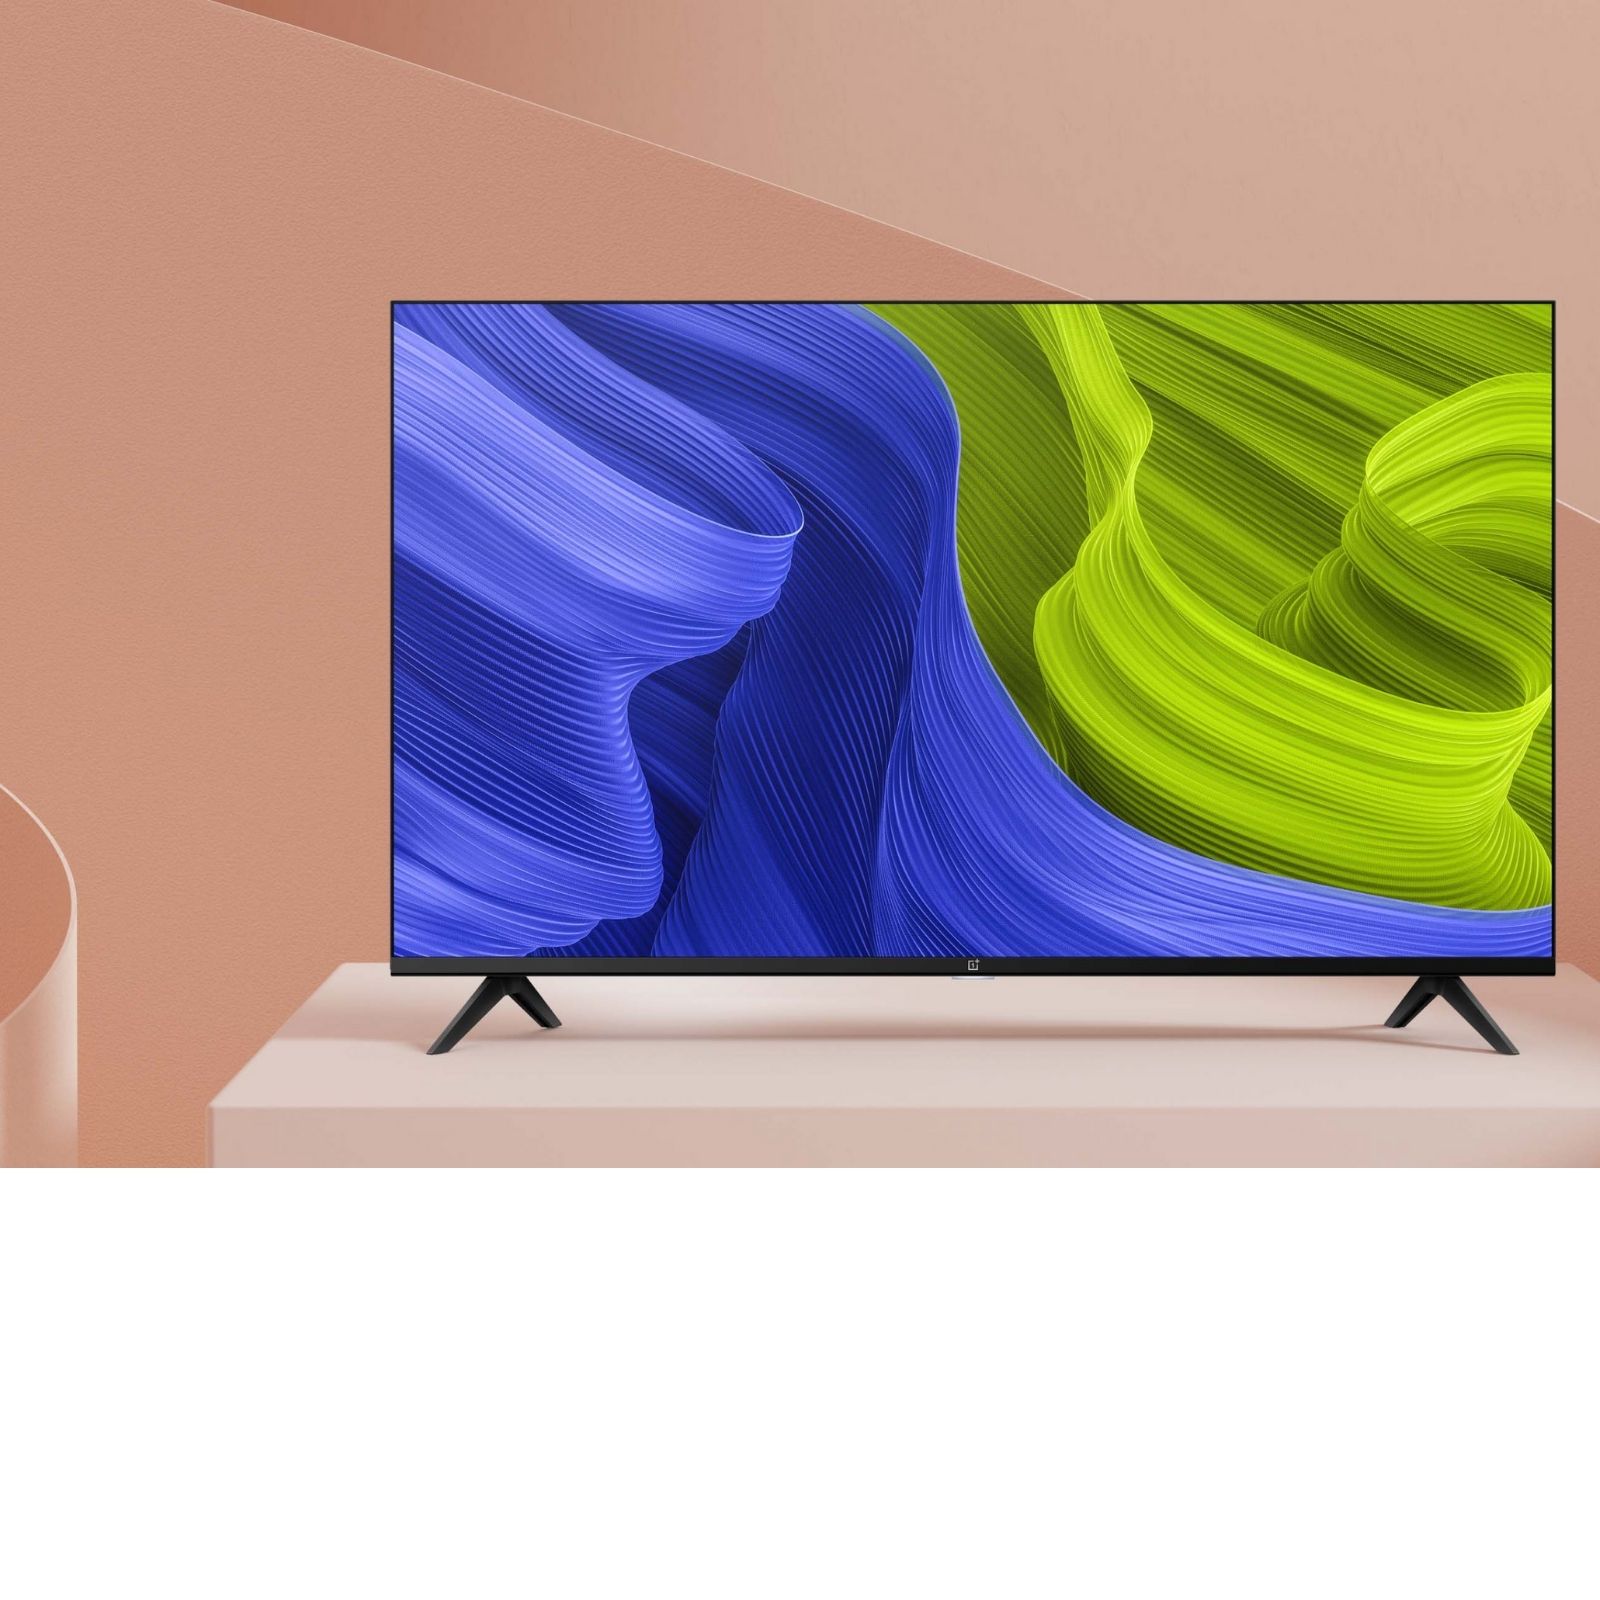 Oneplus Smart TV Price Flipkart and Amazon Smart TV Sale SSND - महज 572  रुपये महीने पर खरीदें 32 इंच का OnePlus स्मार्ट टीवी, जानें क्या है स्कीम –  News18 हिंदी